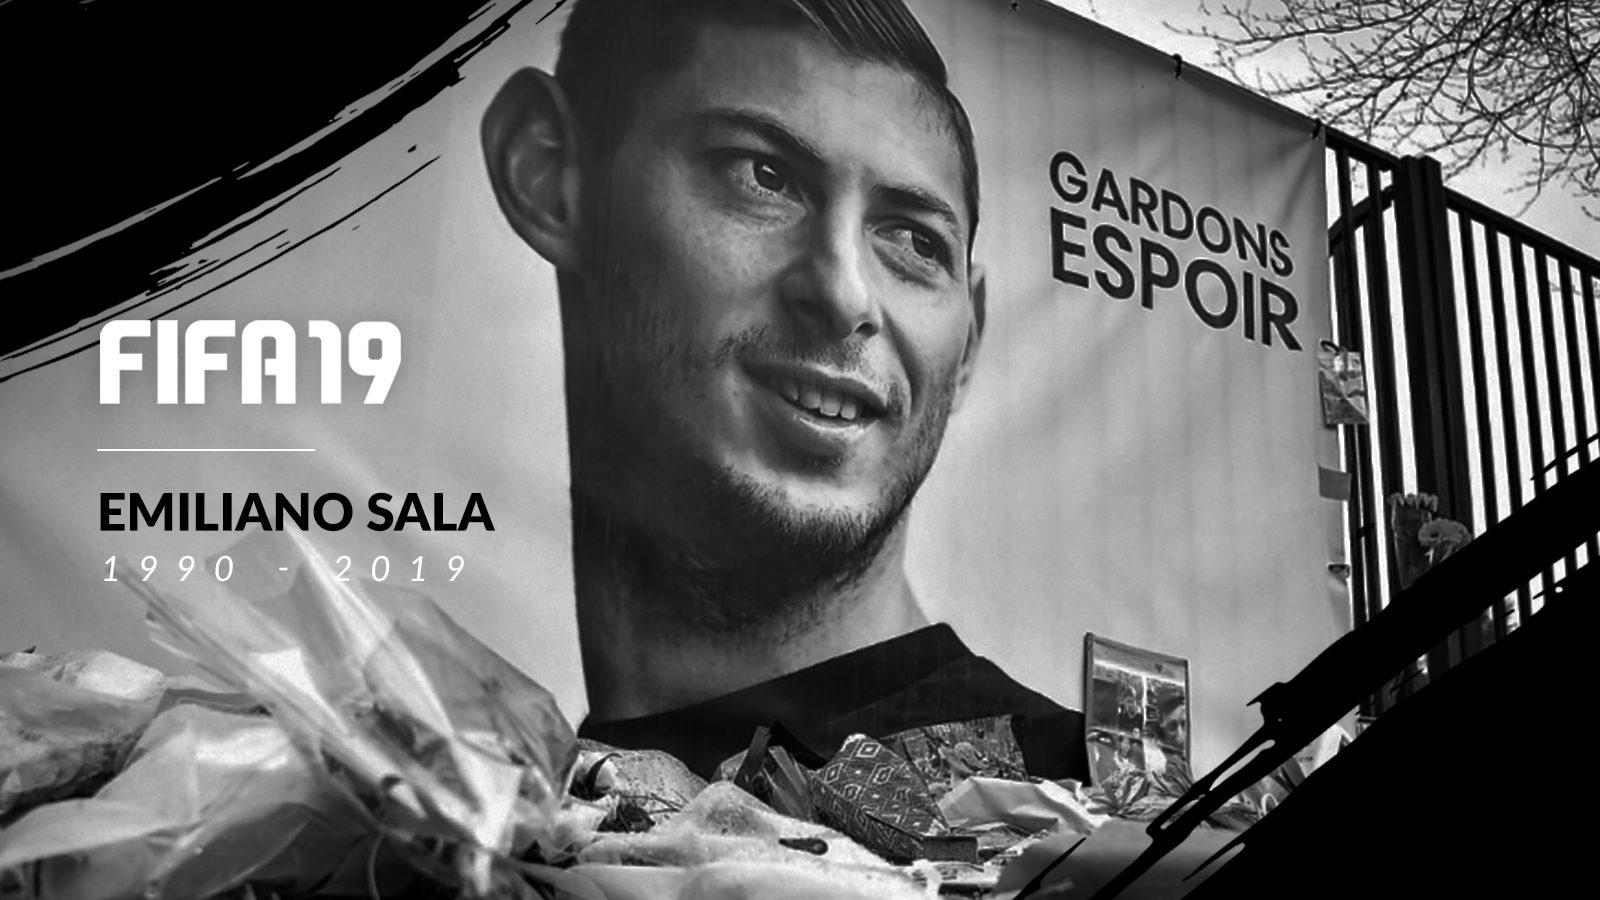 FIFA 19 retira Emiliano Sala do jogo, mas PES resolveu manter o jogador -  eSports - SAPO Desporto